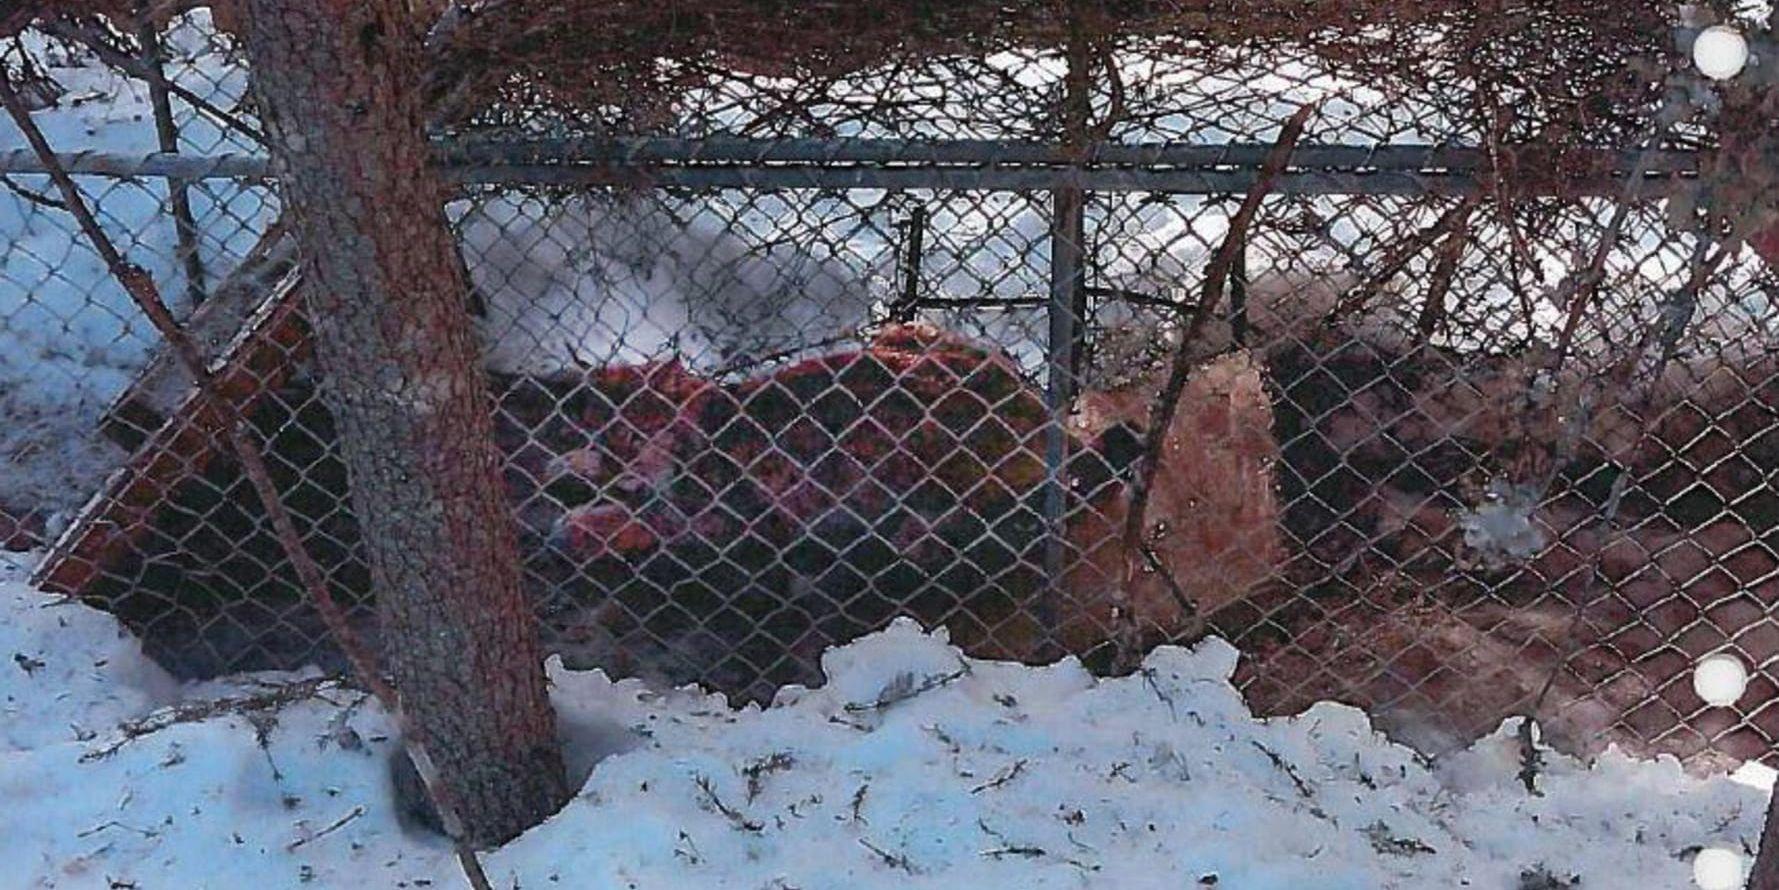 Ett lodjur som fångats och hålls i bur av en av de misstänkta. Bilden fanns i mobiltelefonen hos en av de misstänkta i rättegången om grova jaktbrott i Norrbotten. Bild ur förundersökningsprotokollet.